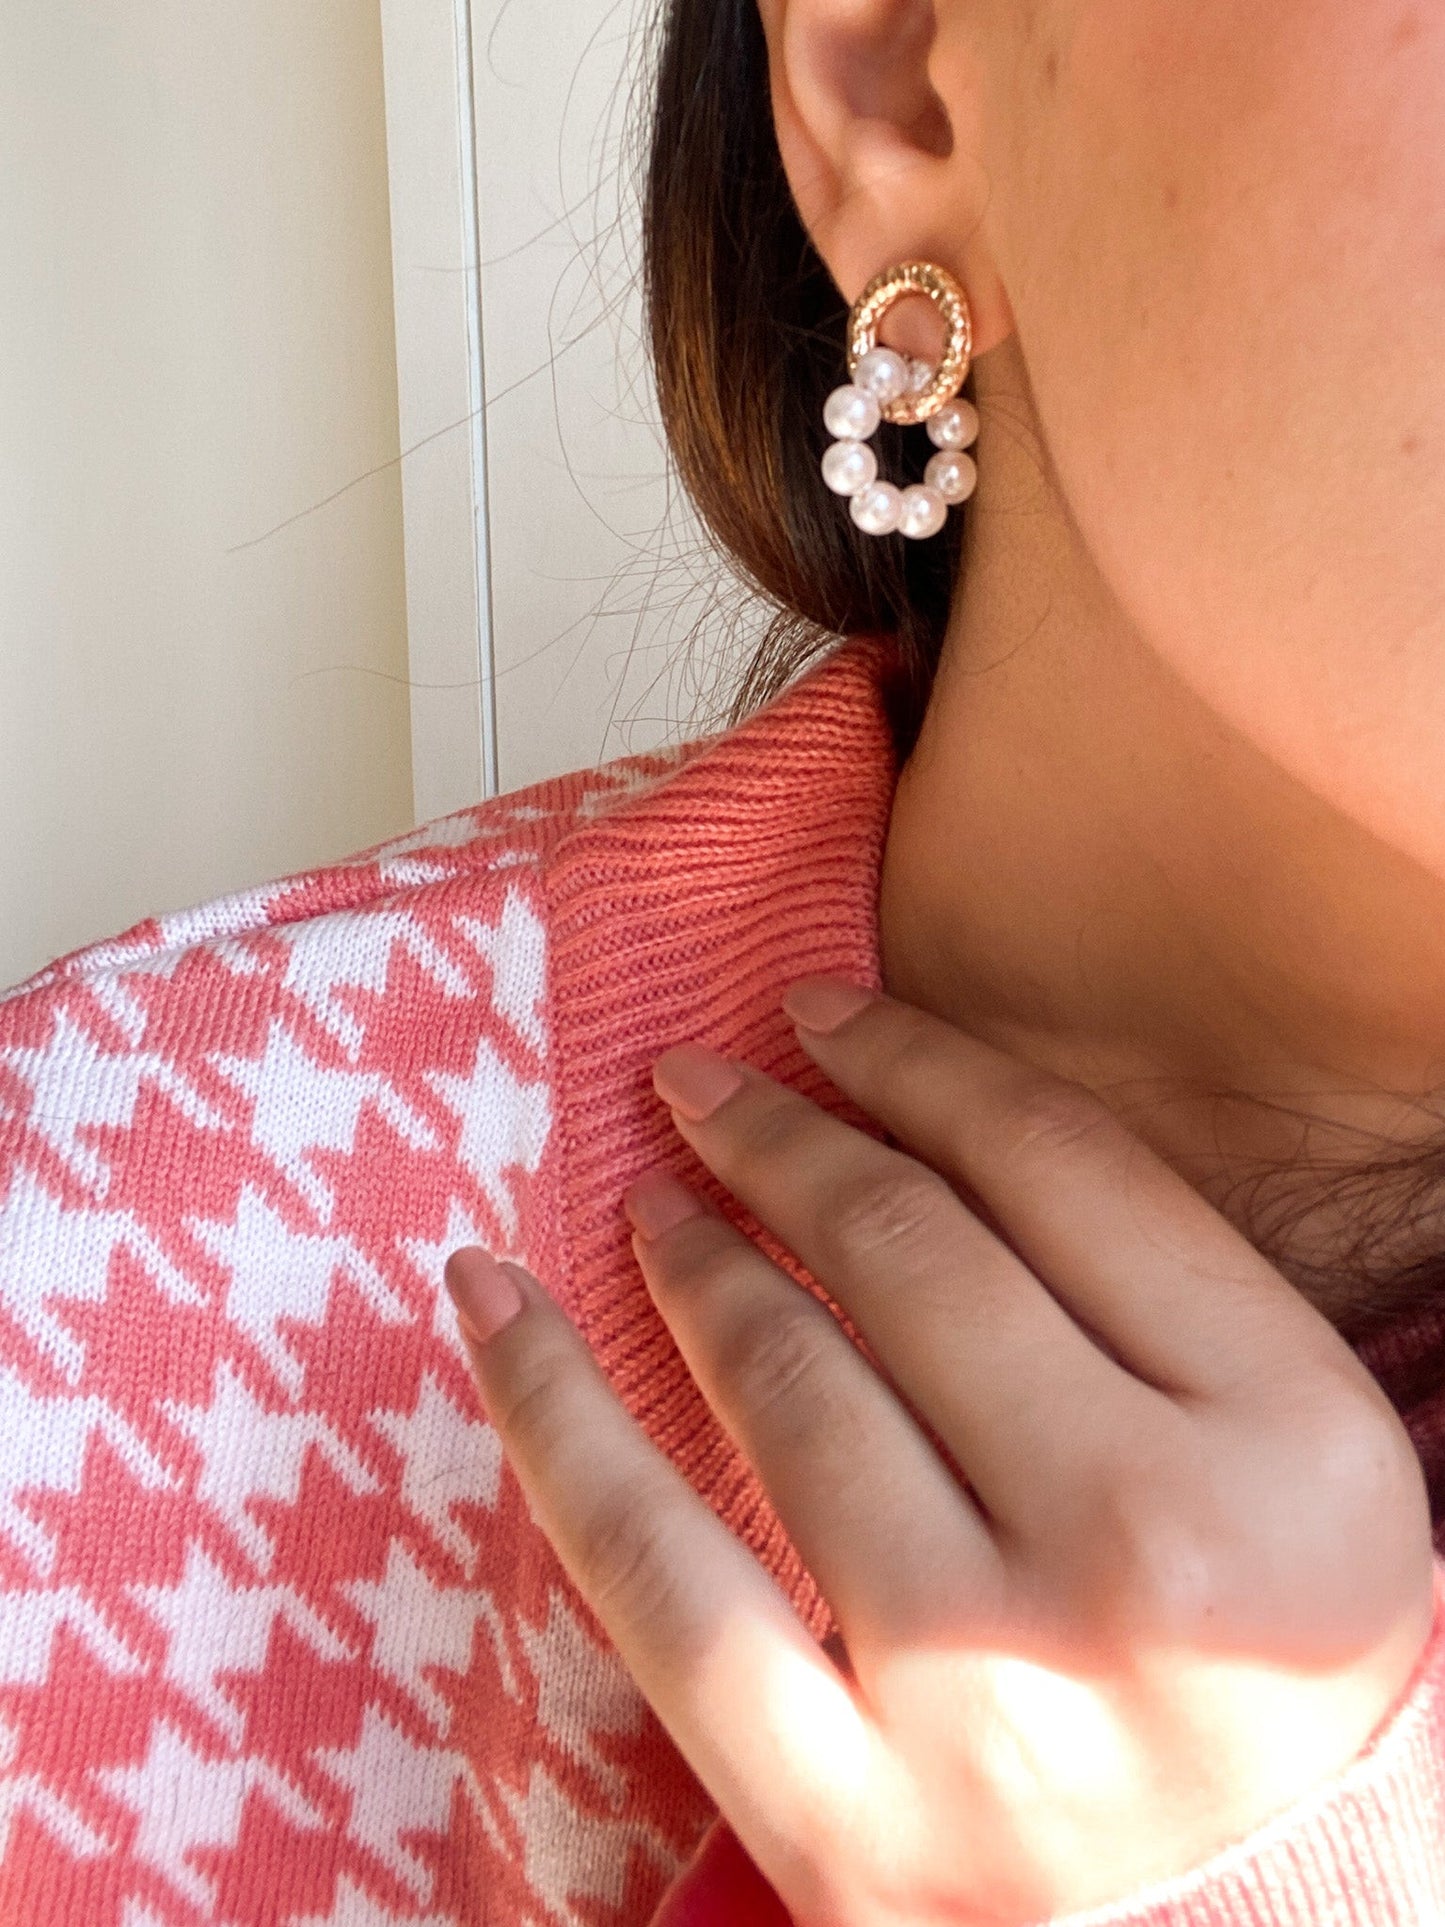 Double Pearl Earring - Lili-Origin